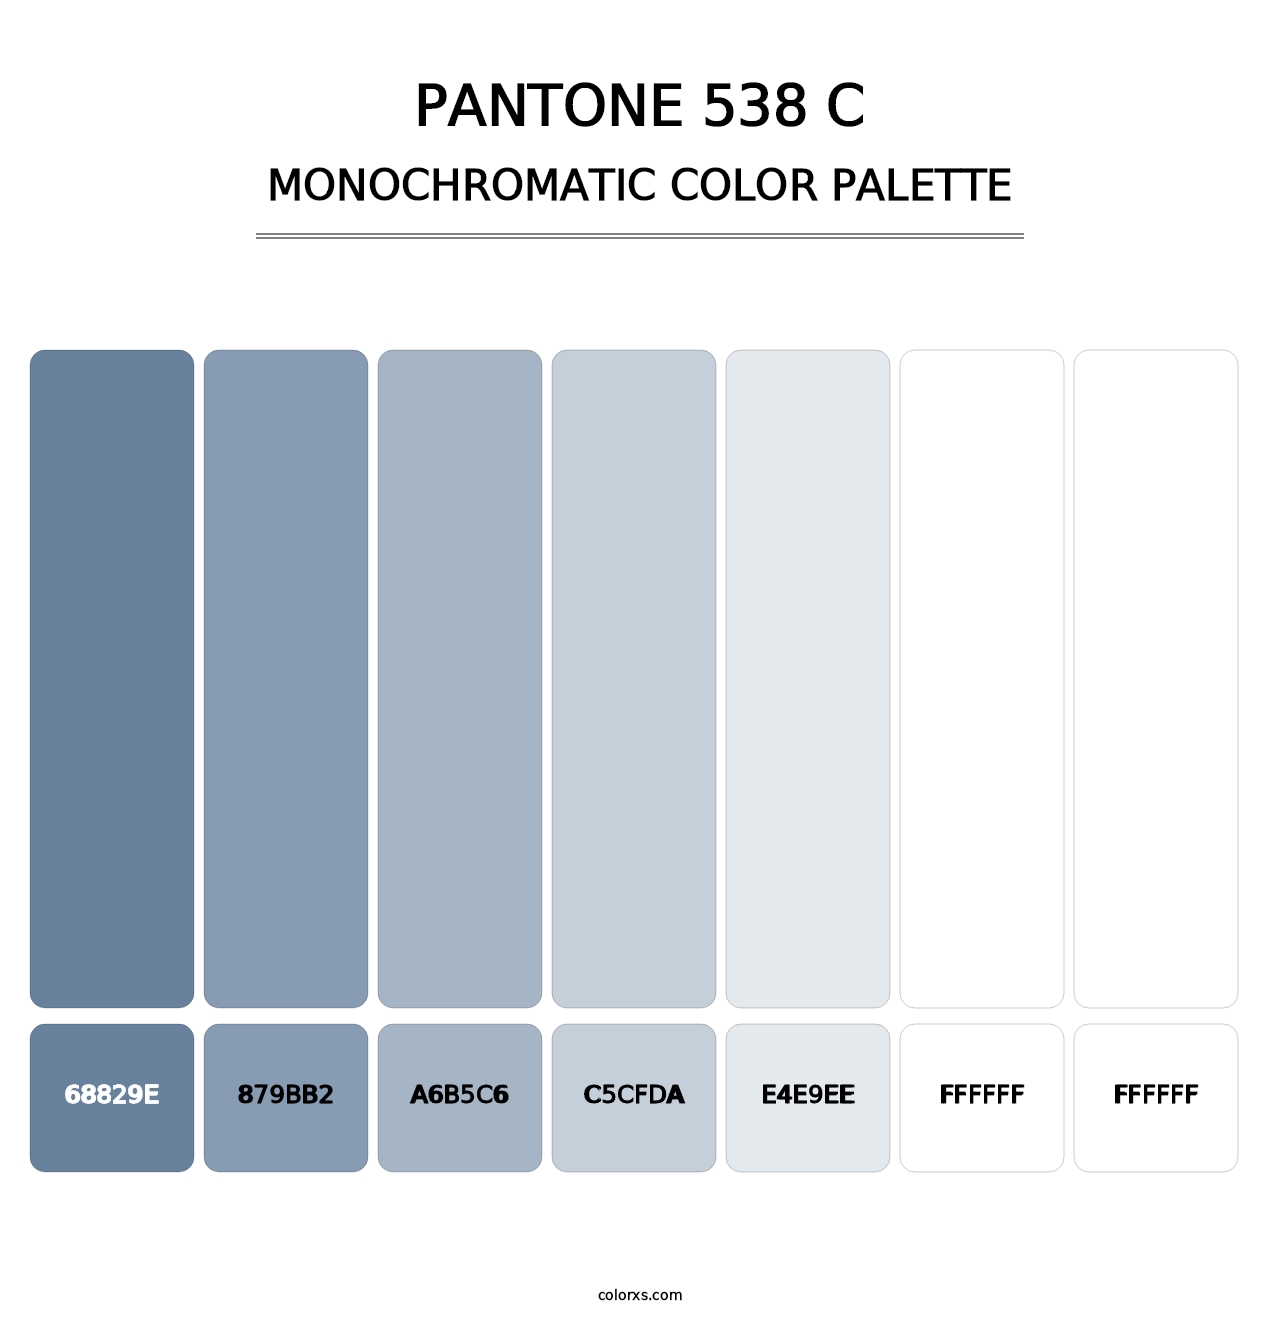 PANTONE 538 C - Monochromatic Color Palette